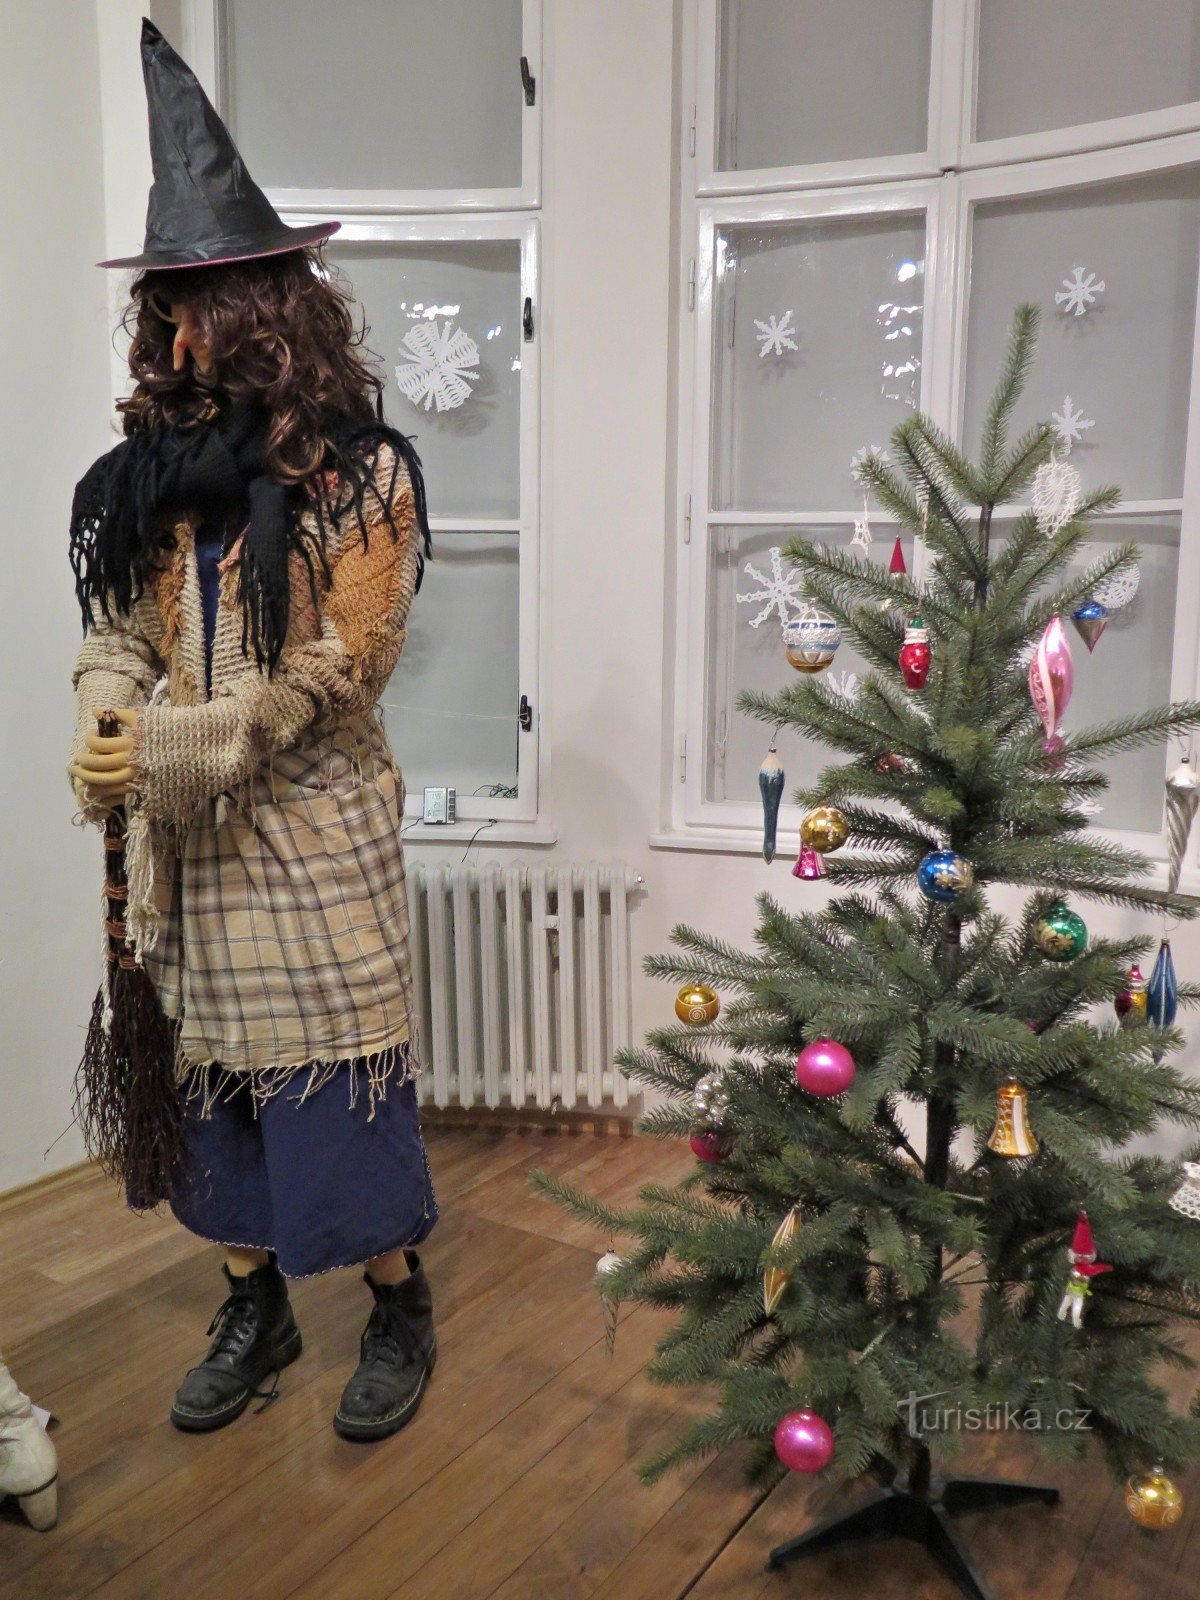 Χριστουγεννιάτικες παραδόσεις και έθιμα στην Ευρώπη (VM Šumperk)